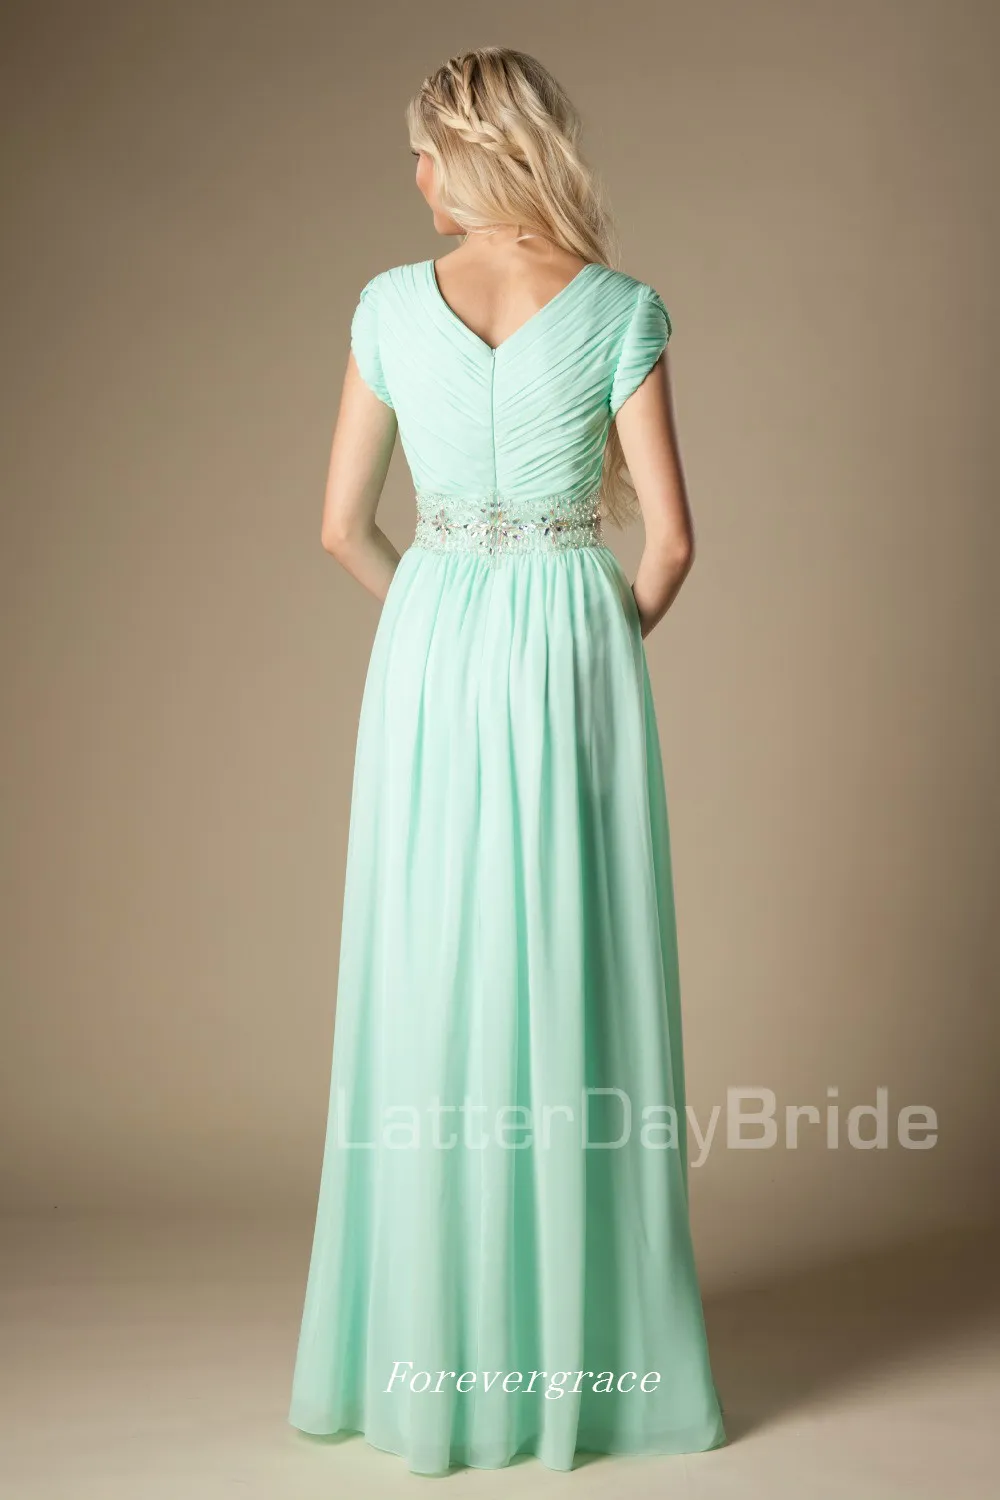 Wysoka jakość Zroszony Mint Green Druhna Dress Modest A-Line Szyfonowa Formalna Maid of Honor Dress Suknia Ślubna Gośna Custom Made Plus Size